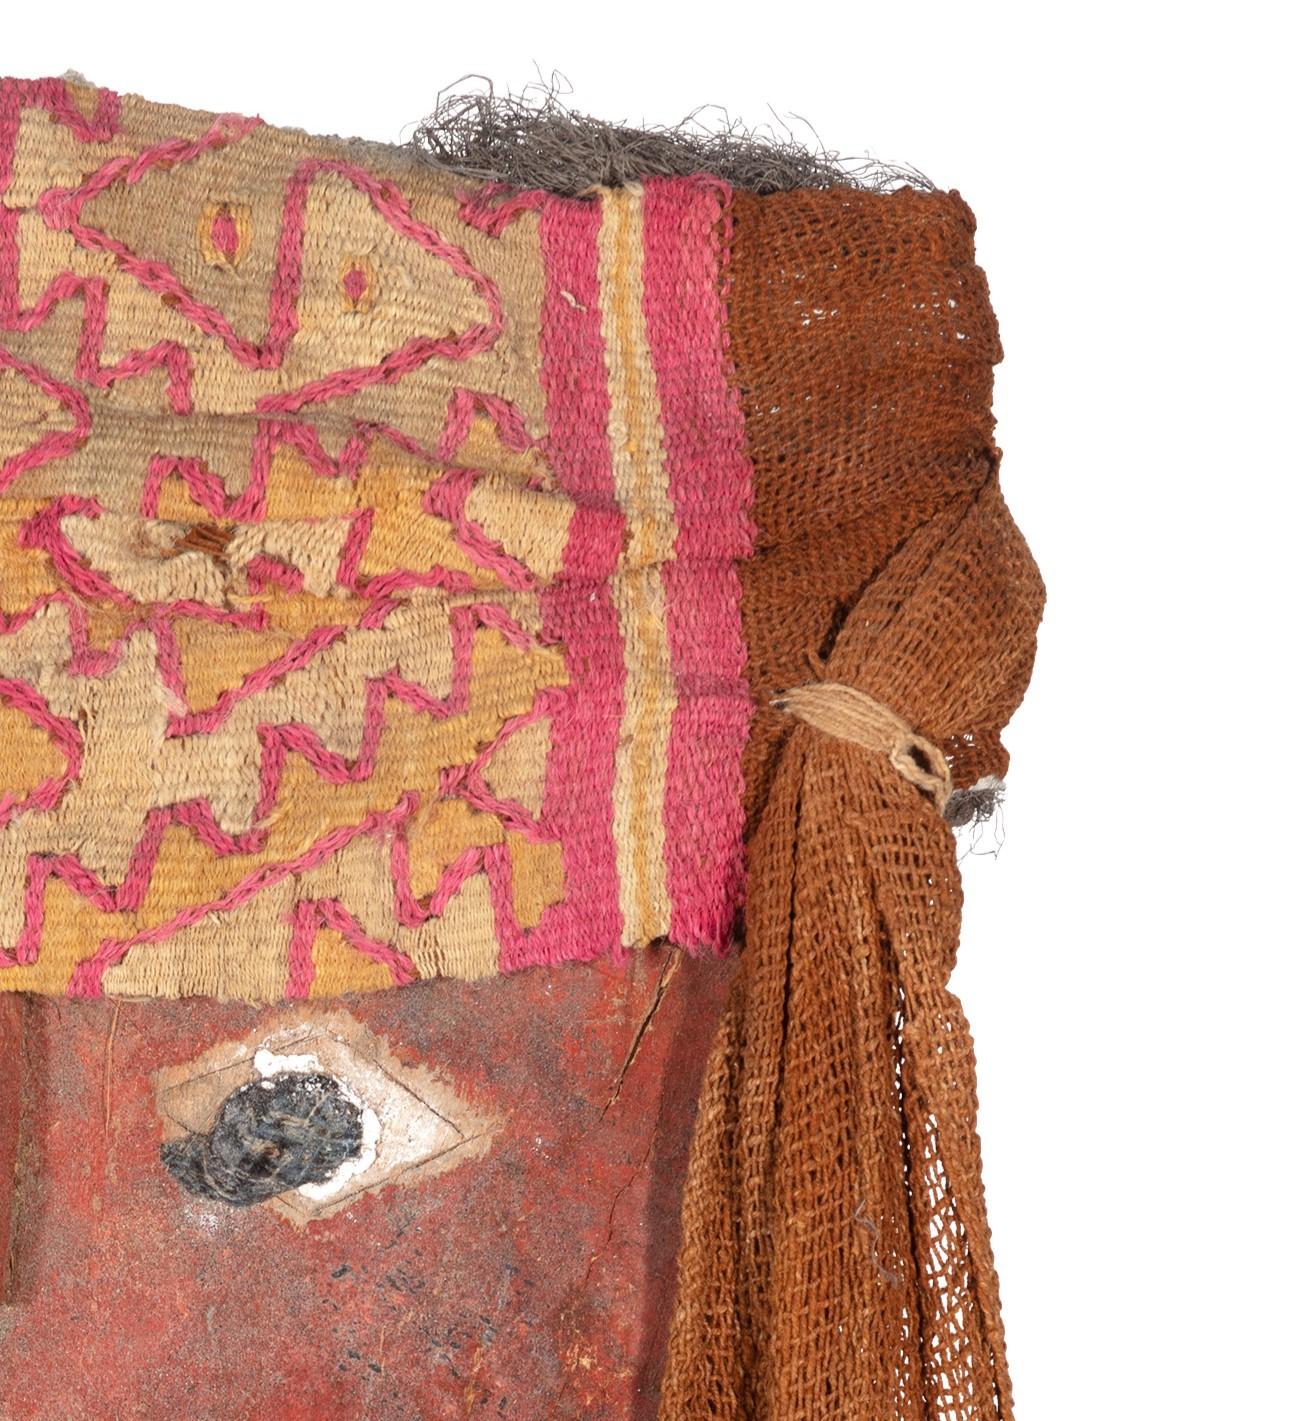 Die peruanische Chancay (pre-Columbian) Mumienbündel-Maske aus der Zeit um 1600 ist aus bemaltem Holz, Textilien und Menschenhaar gefertigt. Nach Angaben des Walters Art Museum:

Die Kulturen der Anden liegen in der Nähe einiger der trockensten